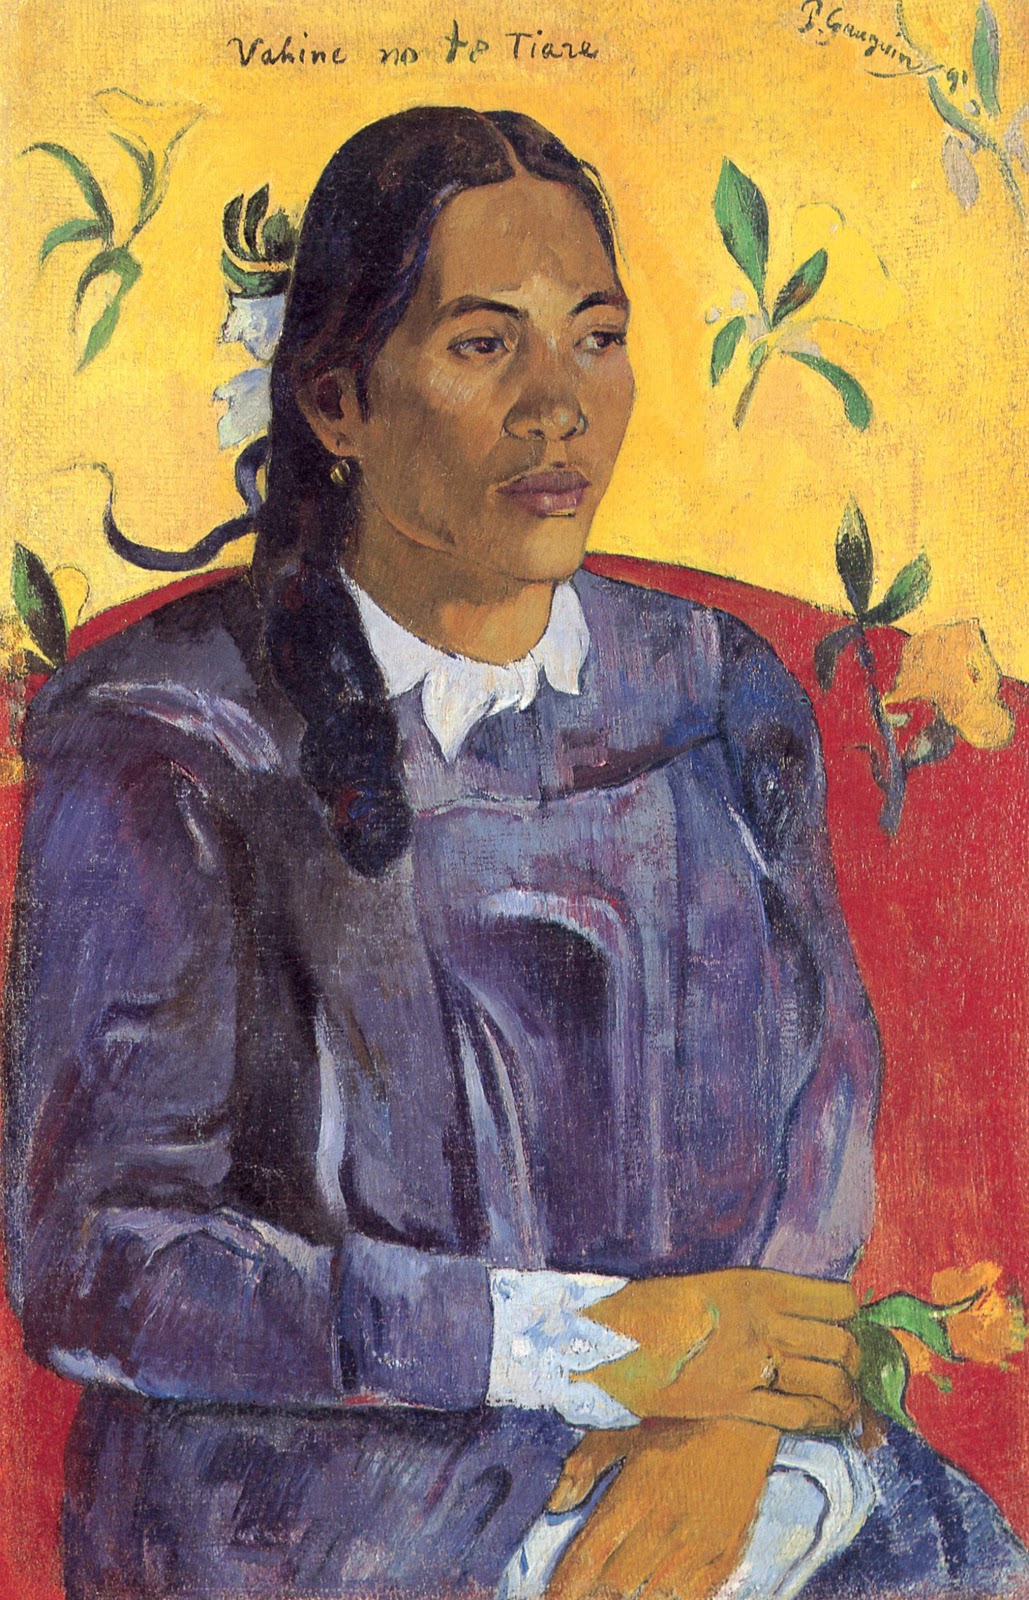 Paul+Gauguin-1848-1903 (502).jpg